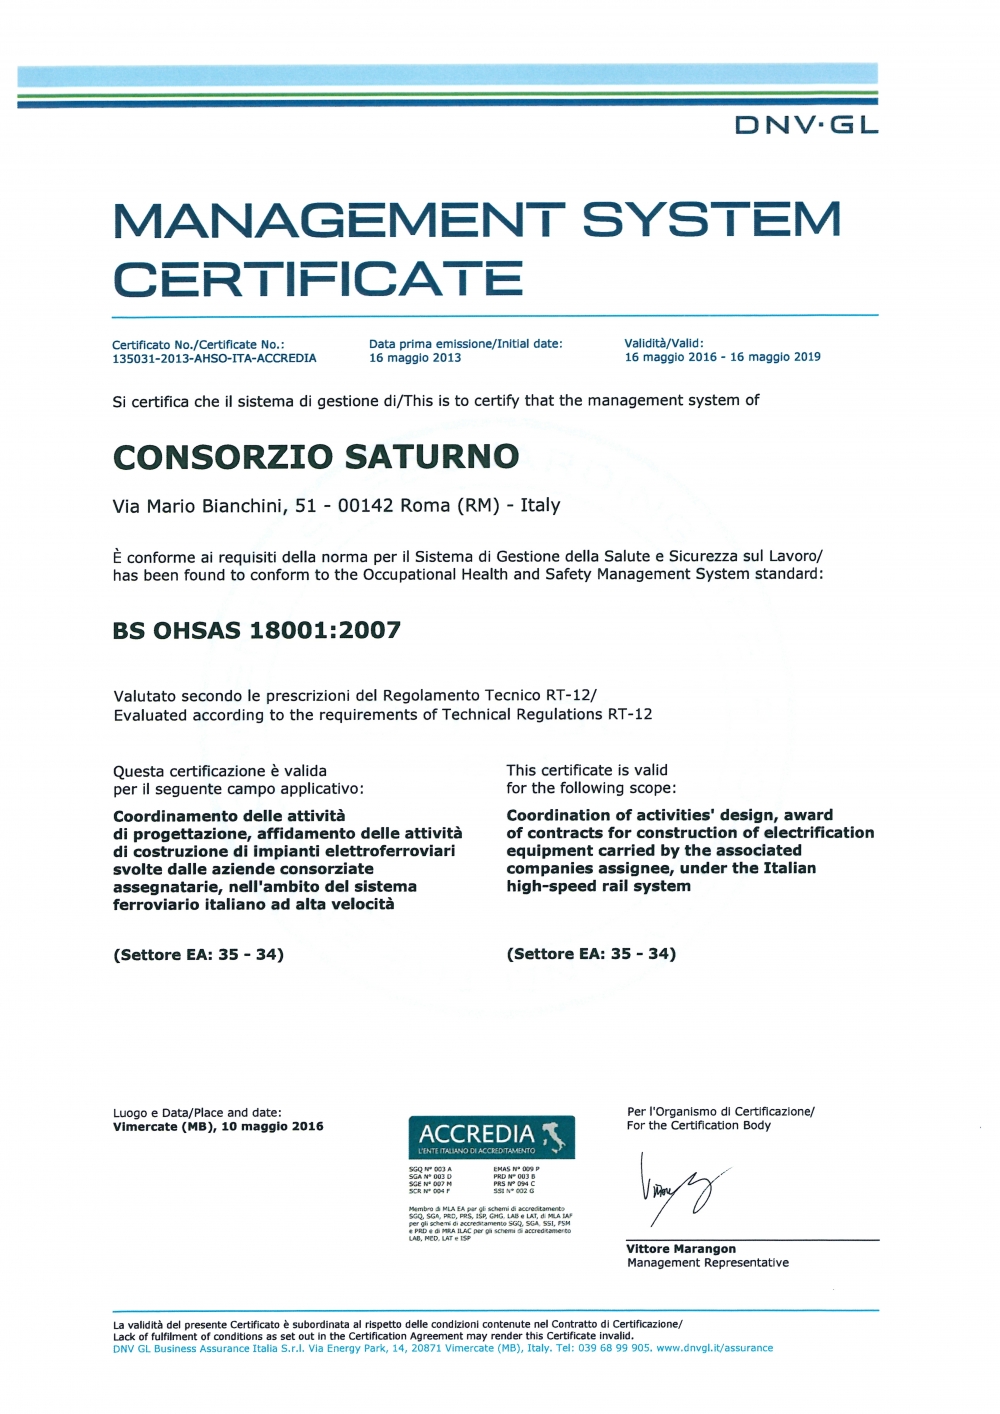 DNV BS OHSAS 18001:2007 - Consorzio Saturno